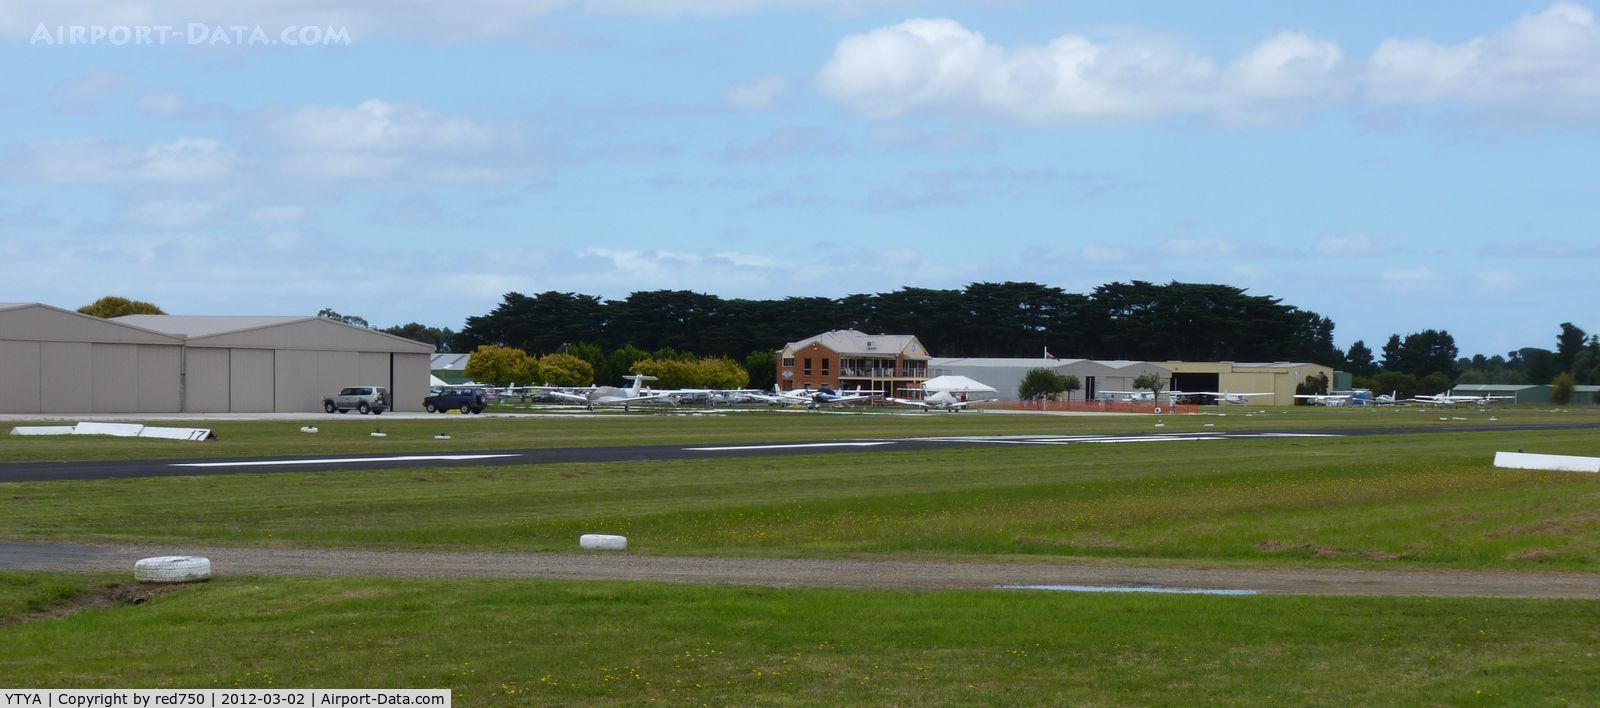 Tyabb Airport, Tyabb, Victoria Australia (YTYA) - Panorama of Tyabb airport Vic